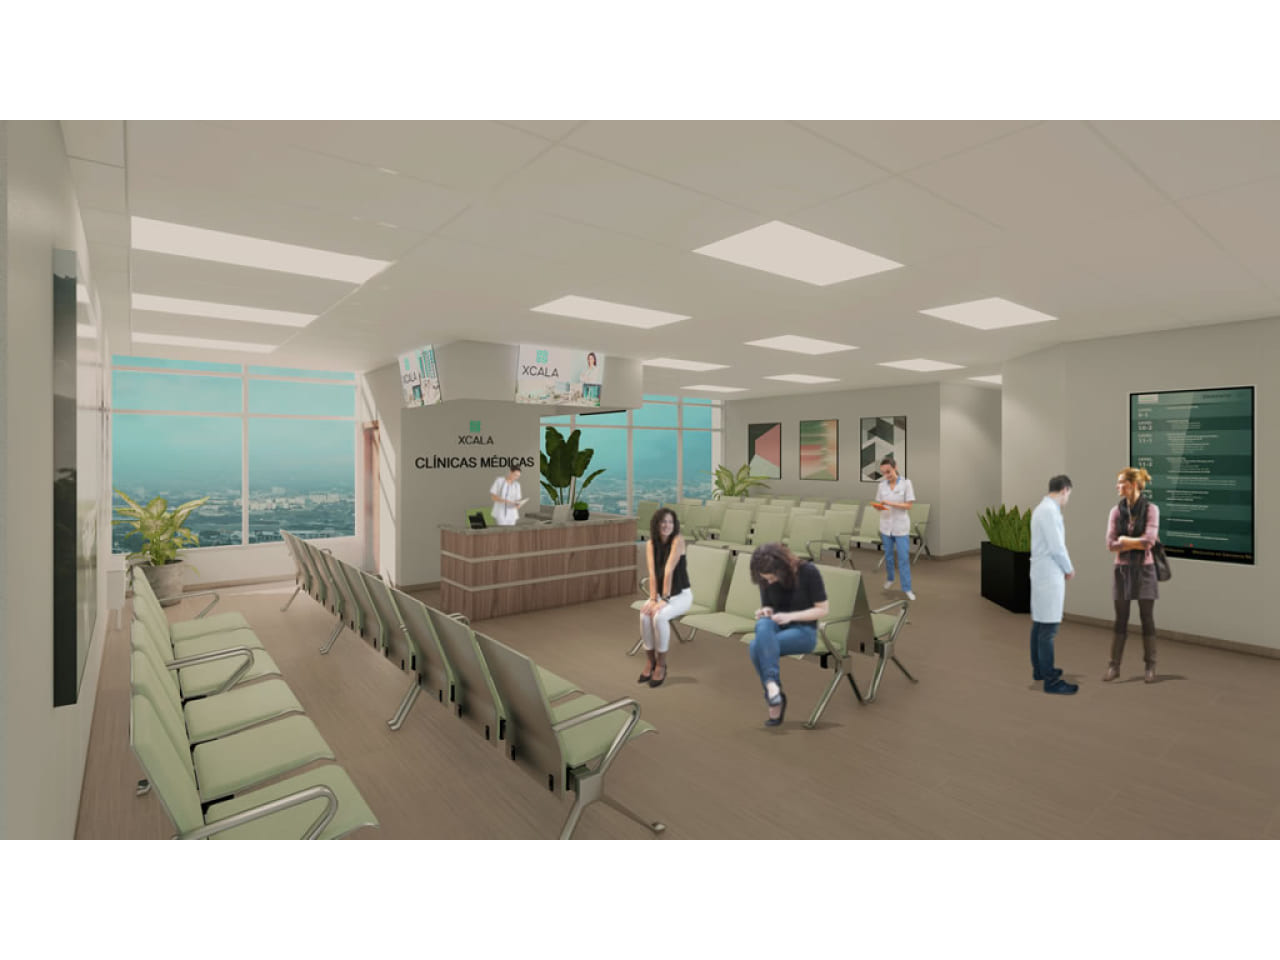 Área de recepción para consultorios médicos, con silla acolchonadas, piso porcelanato, techo tabla yeso.